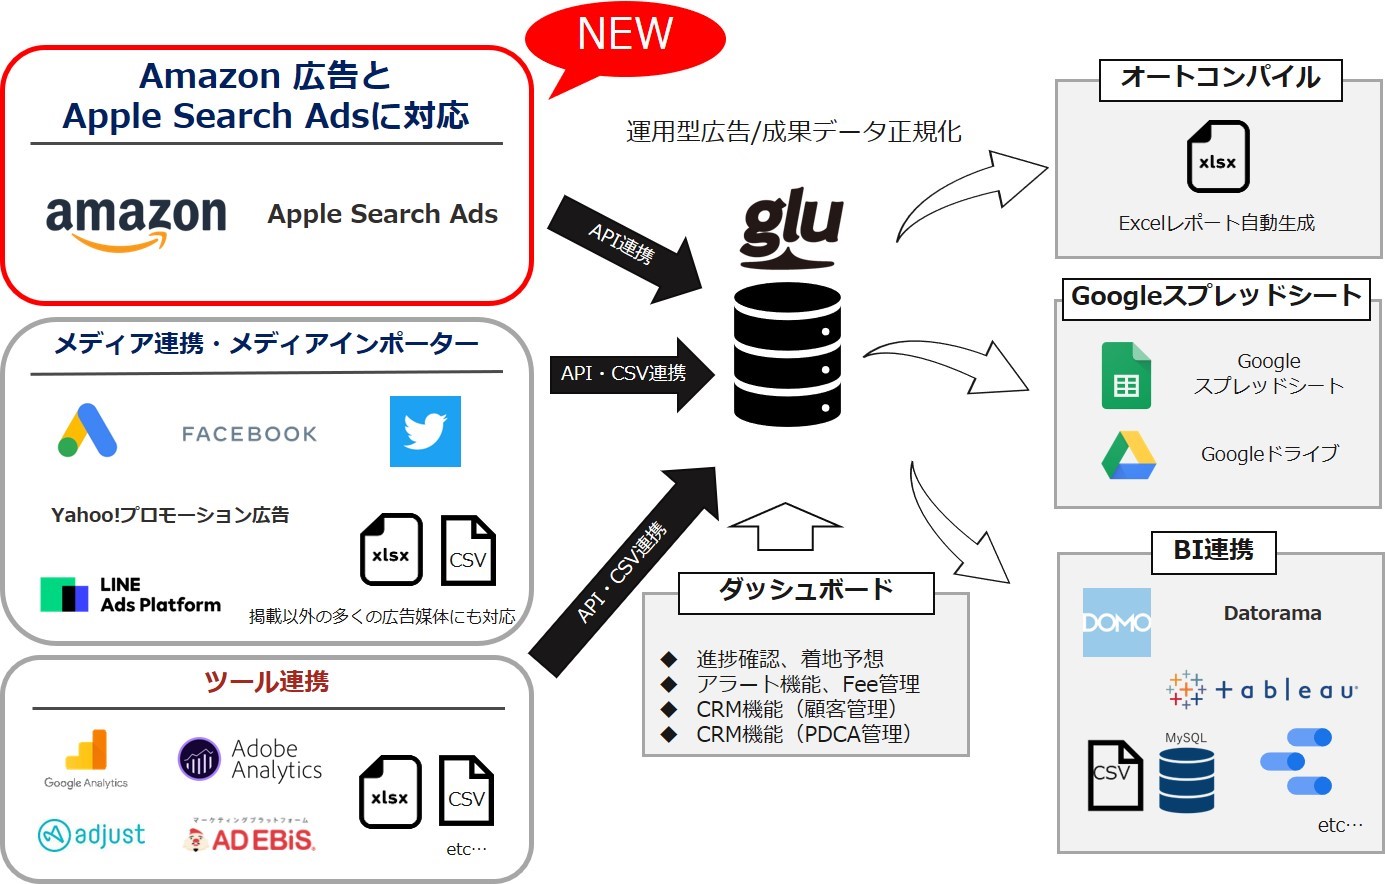 運用型広告レポート作成支援システム「glu」が Amazon 広告とApple Search Adsに対応